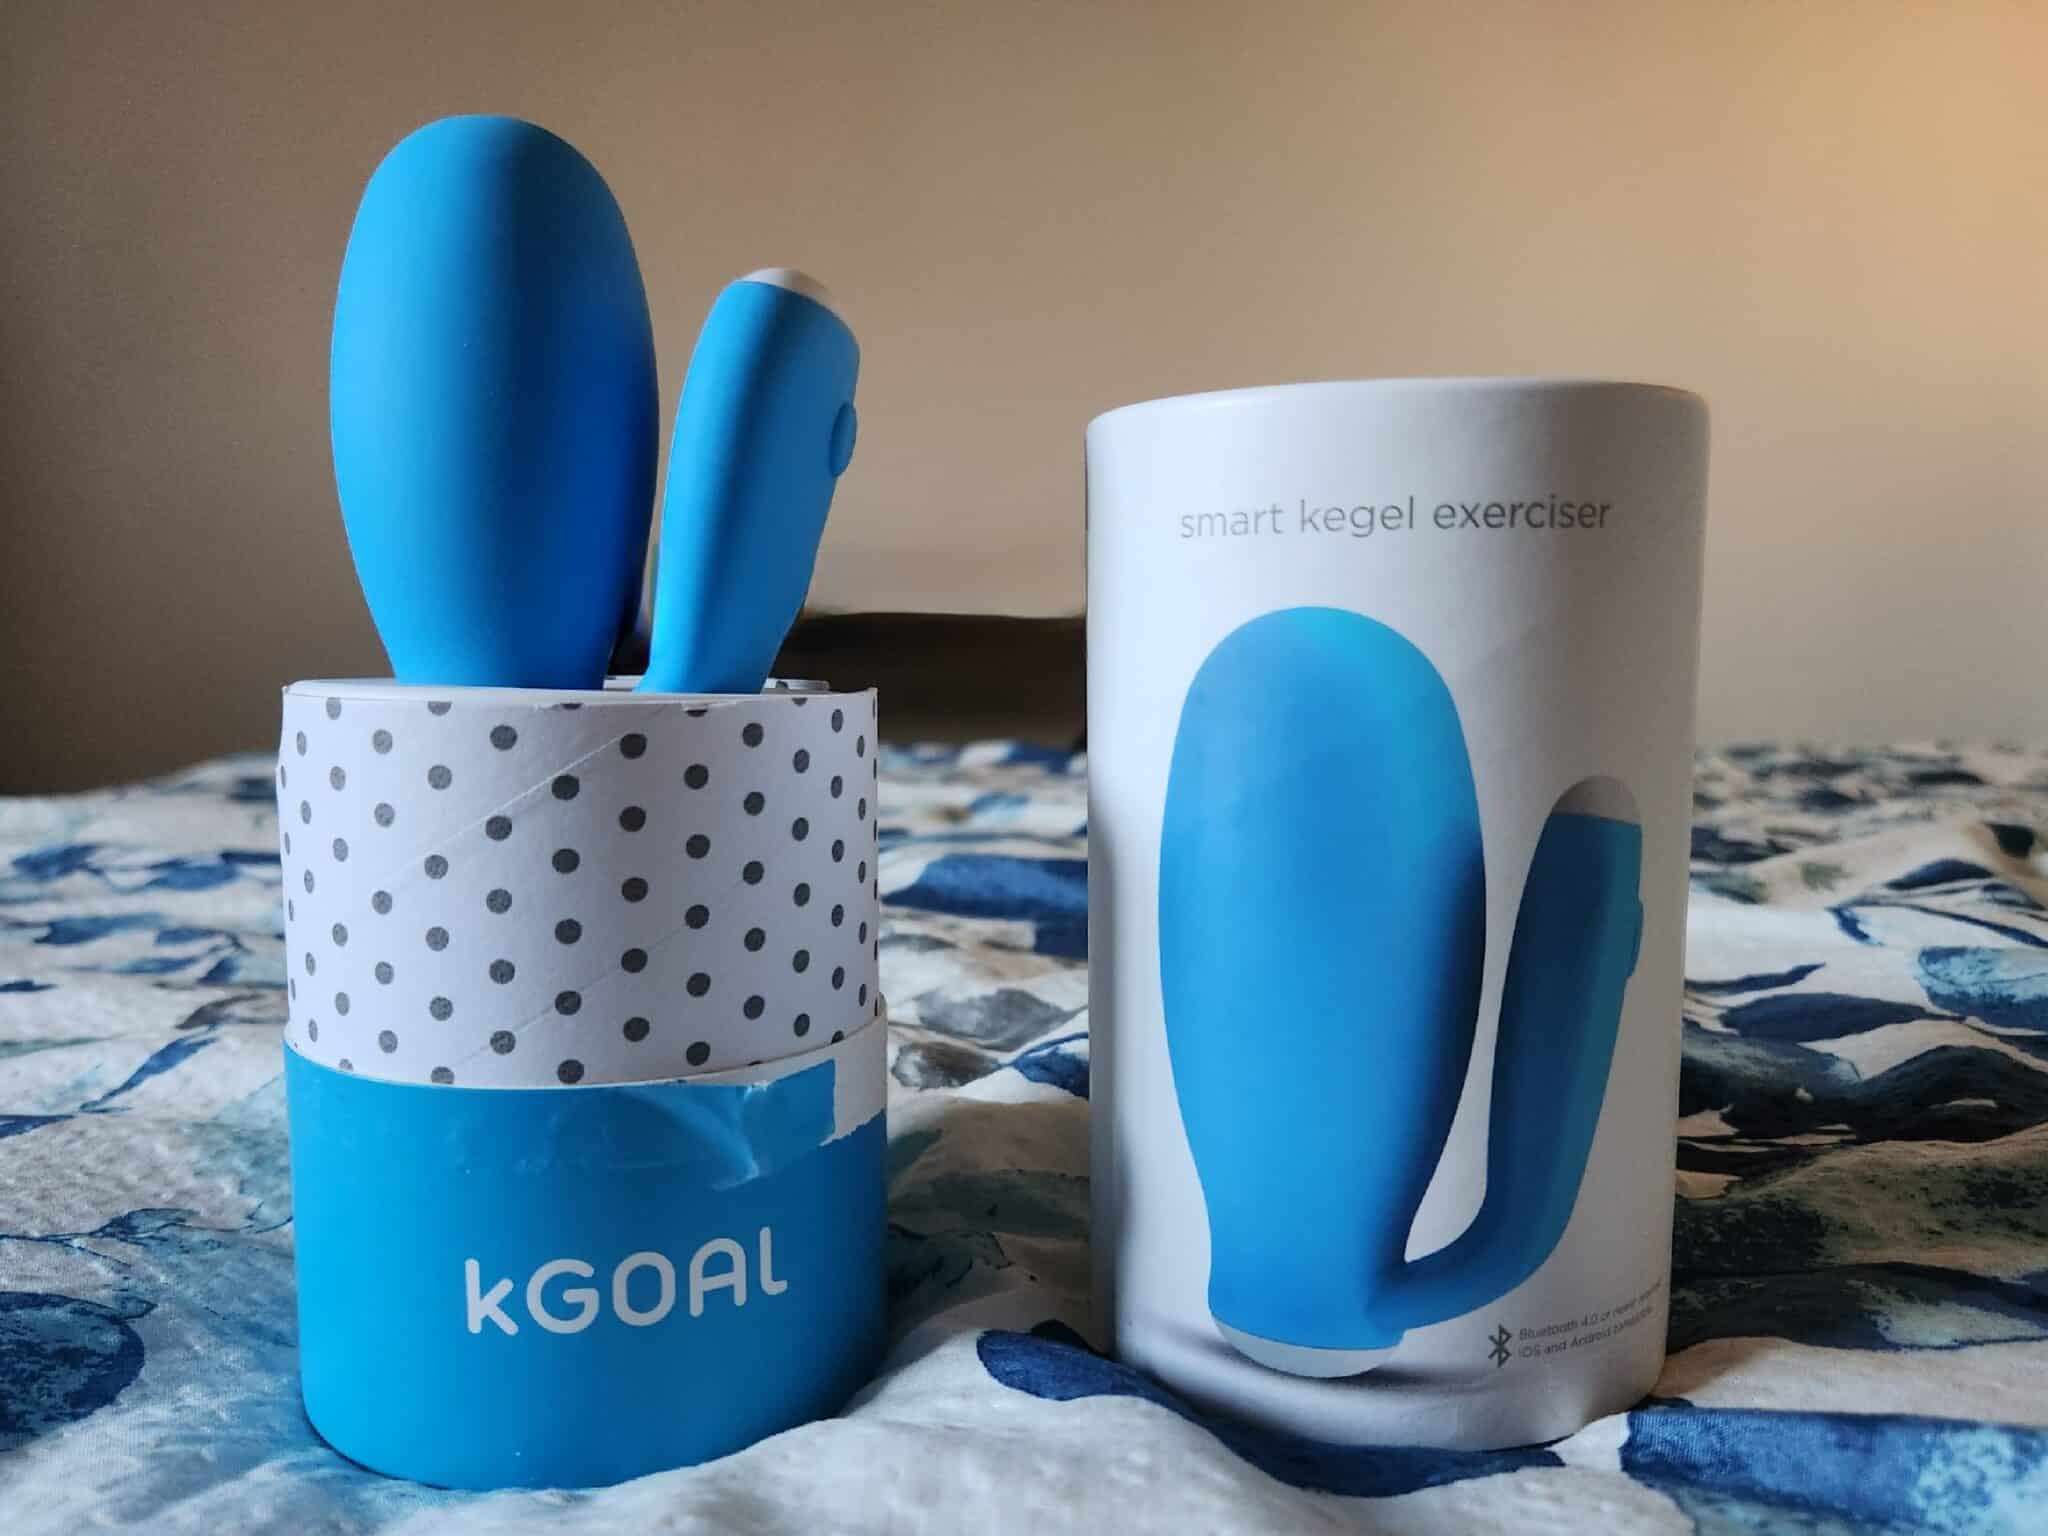 kGoal Classic  Smart Kegel Exerciser and App For Women